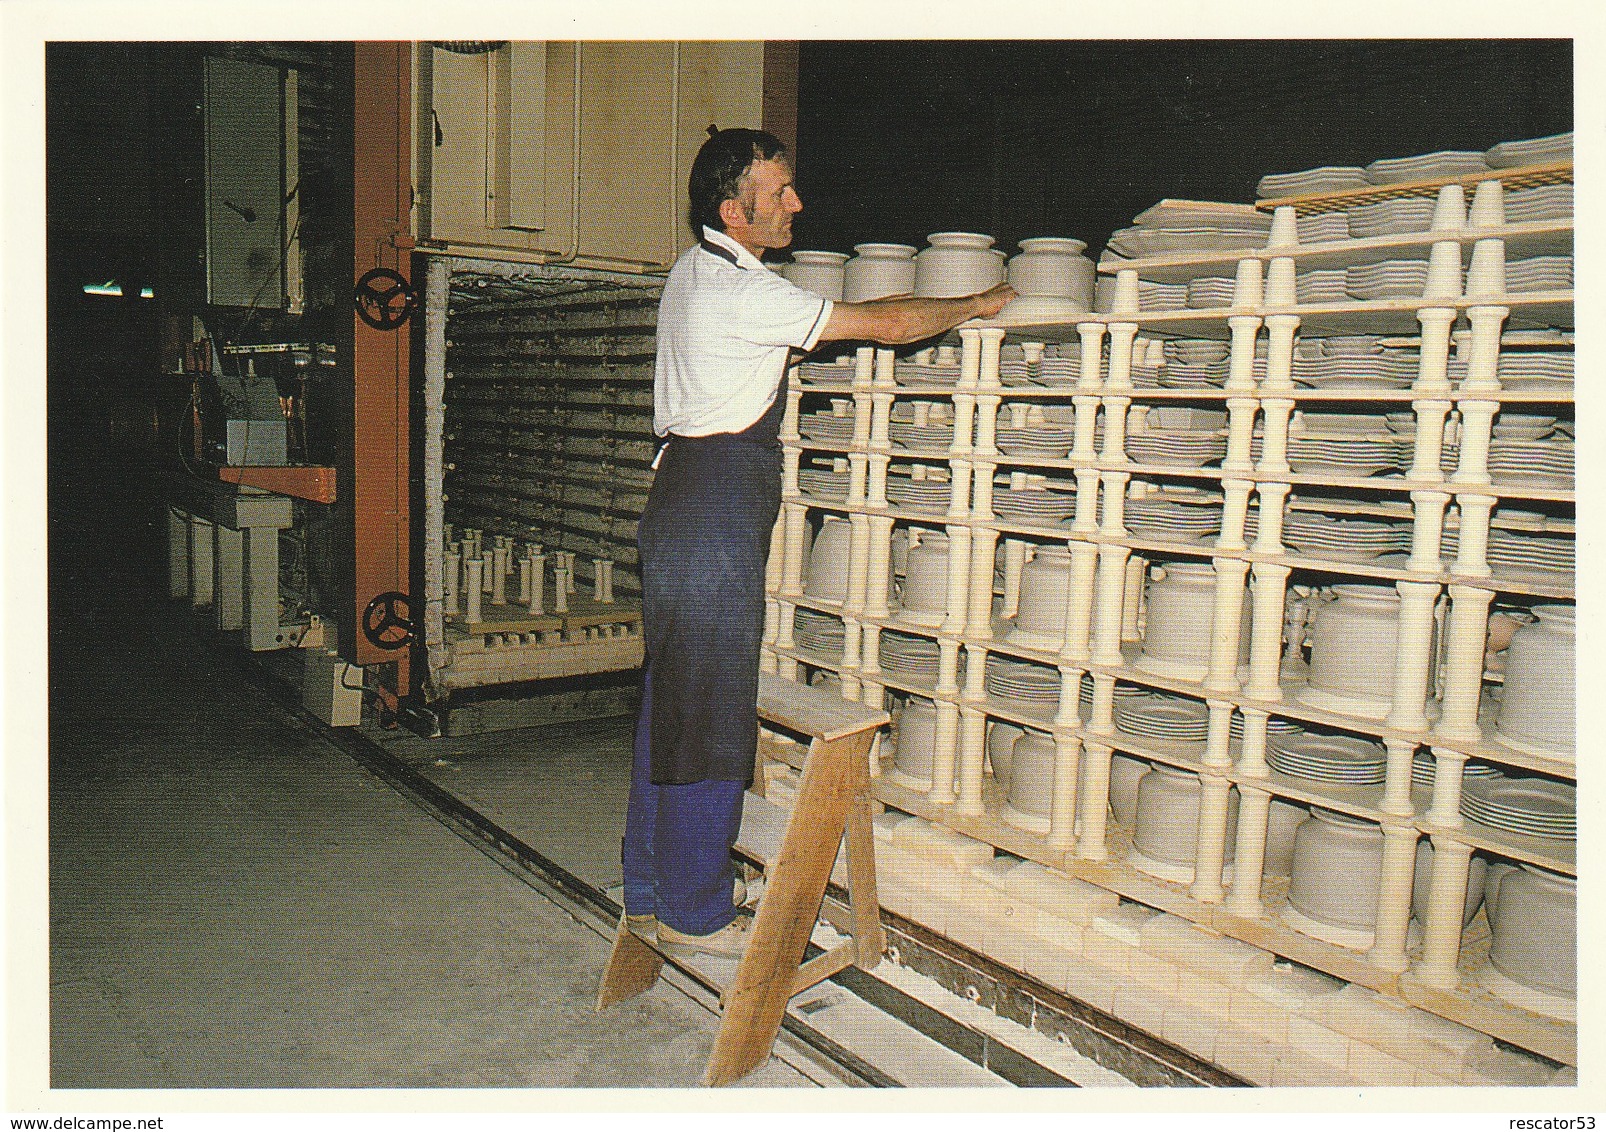 très rare tirage limité à 300 exemplaires lot de 20 CPM les Faïenceries de Quimper HB-Henriot  en 1989